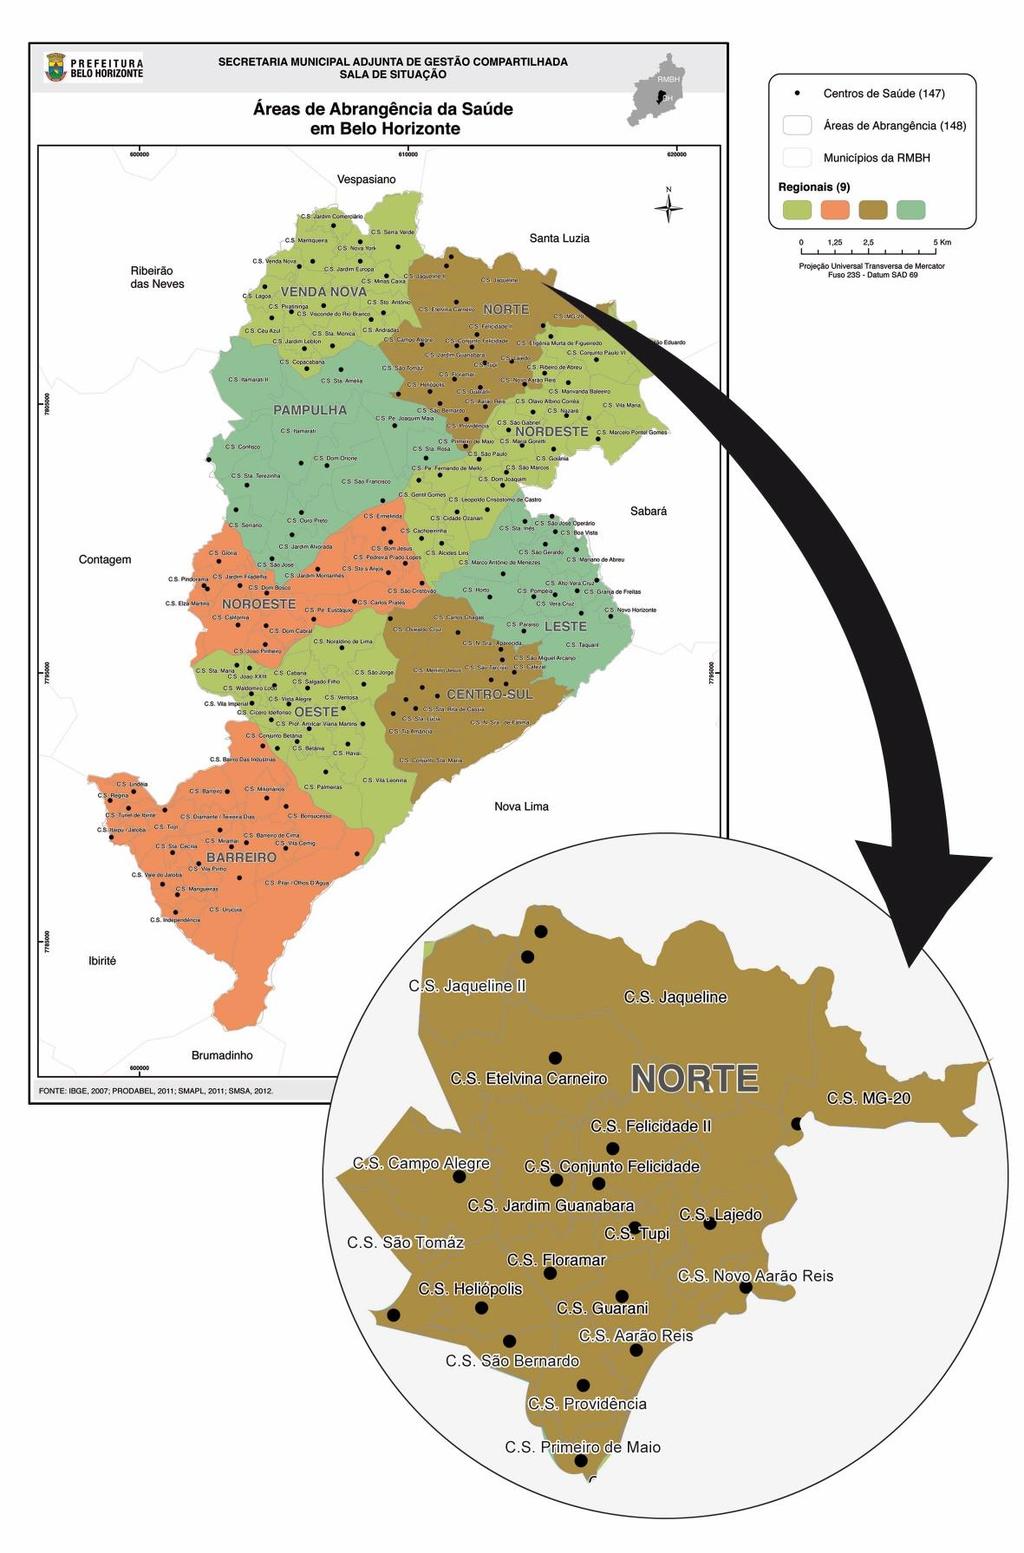 71 Figura 5 - Mapa da cidade de Belo Horizonte com seus distritos sanitários e as correspondentes áreas de abrangência de seus centros de saúde.